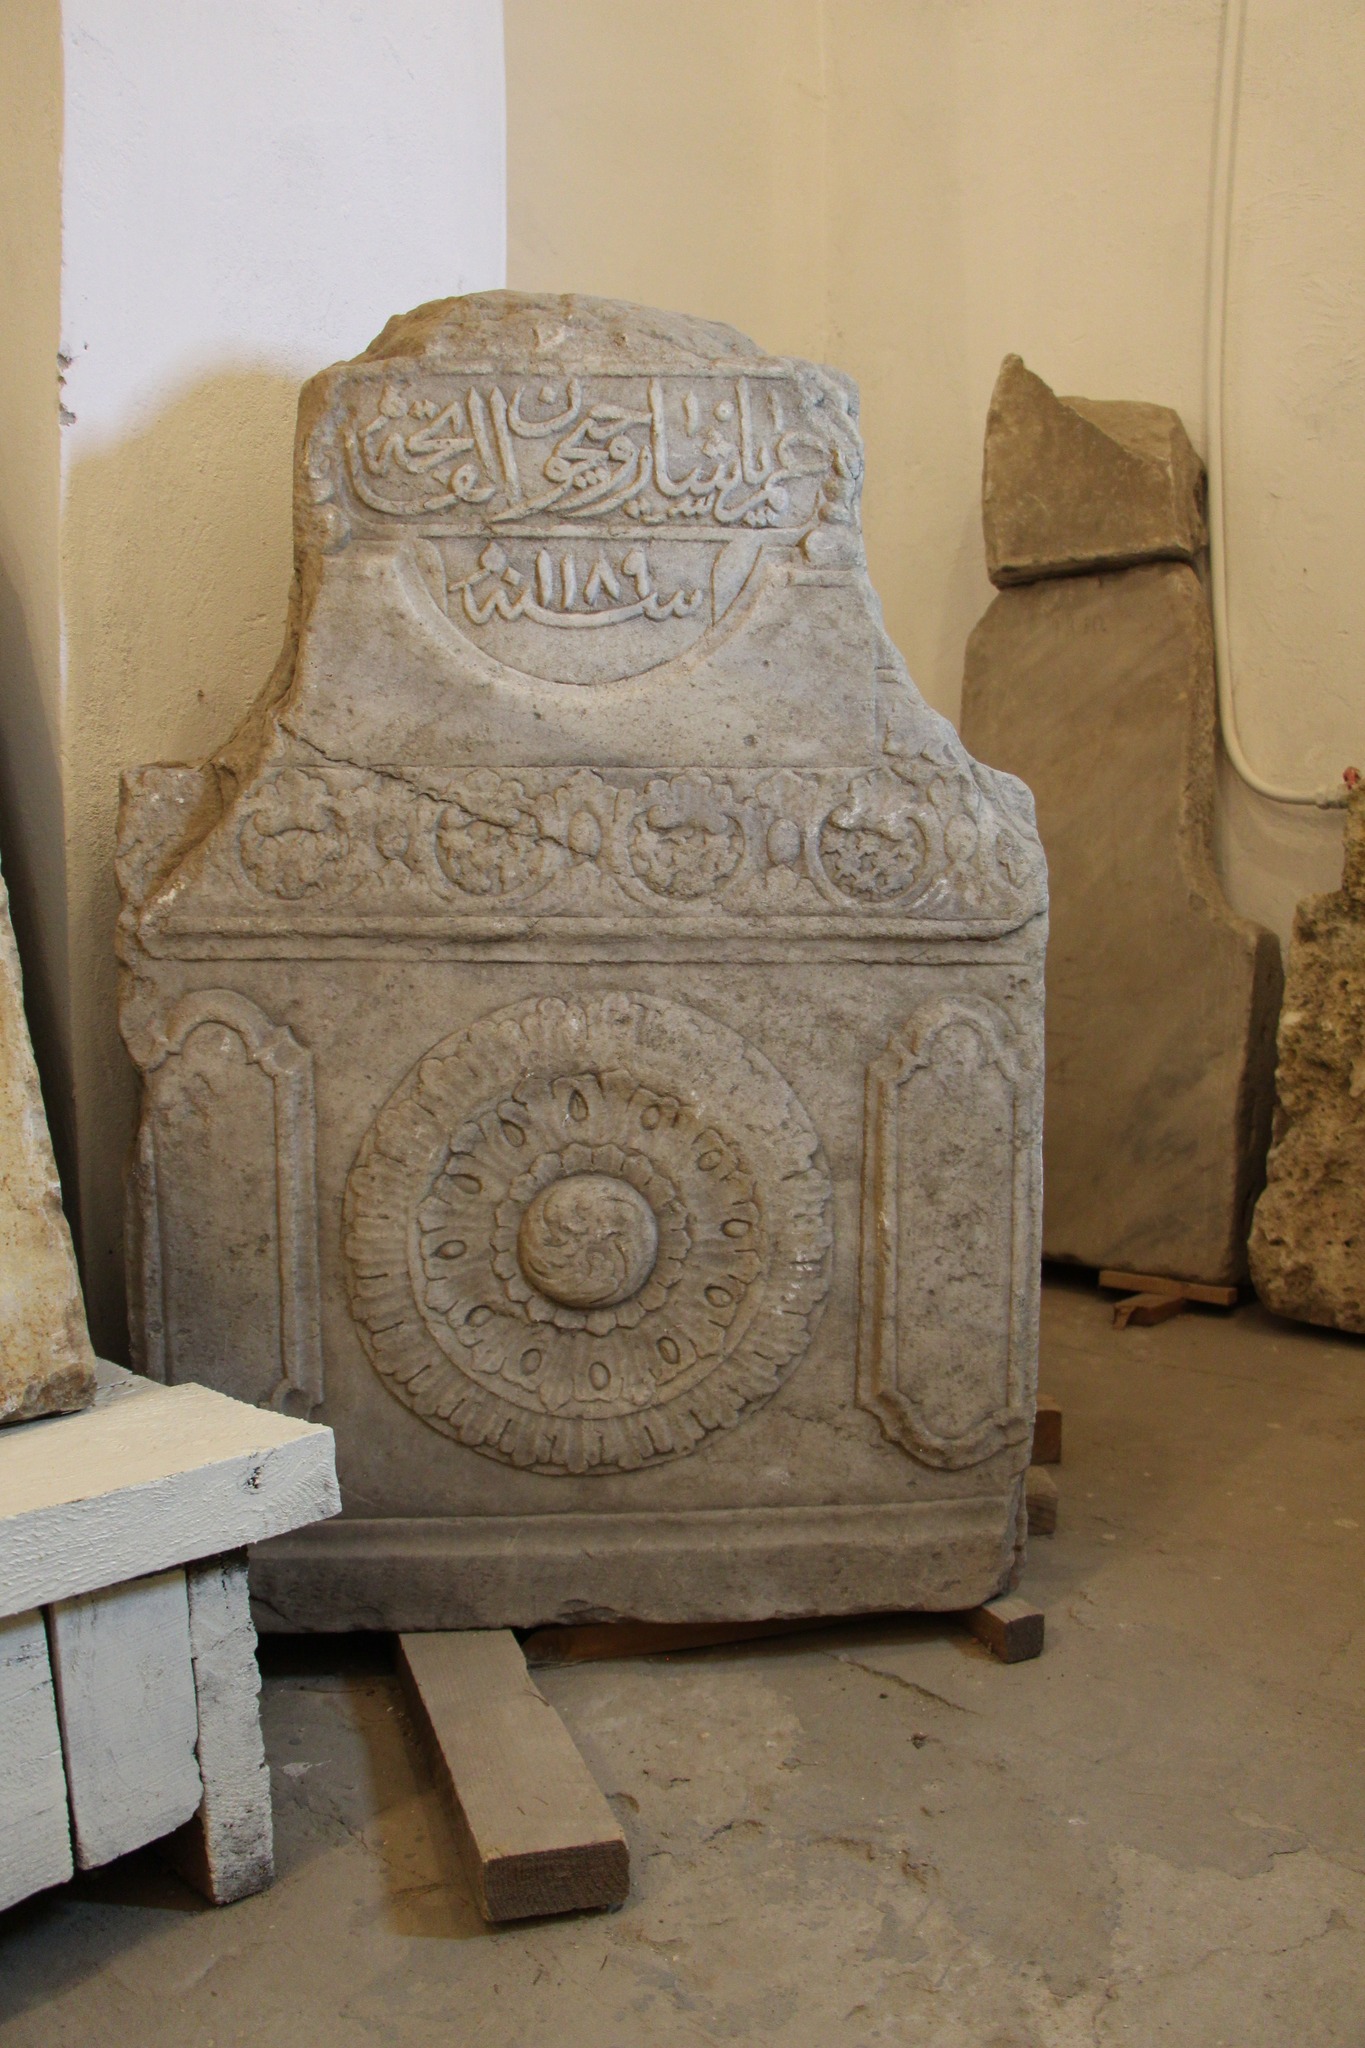 Після окупації у Херсоні збереглися дві унікальних пам'ятки давньої культури Бессарабії